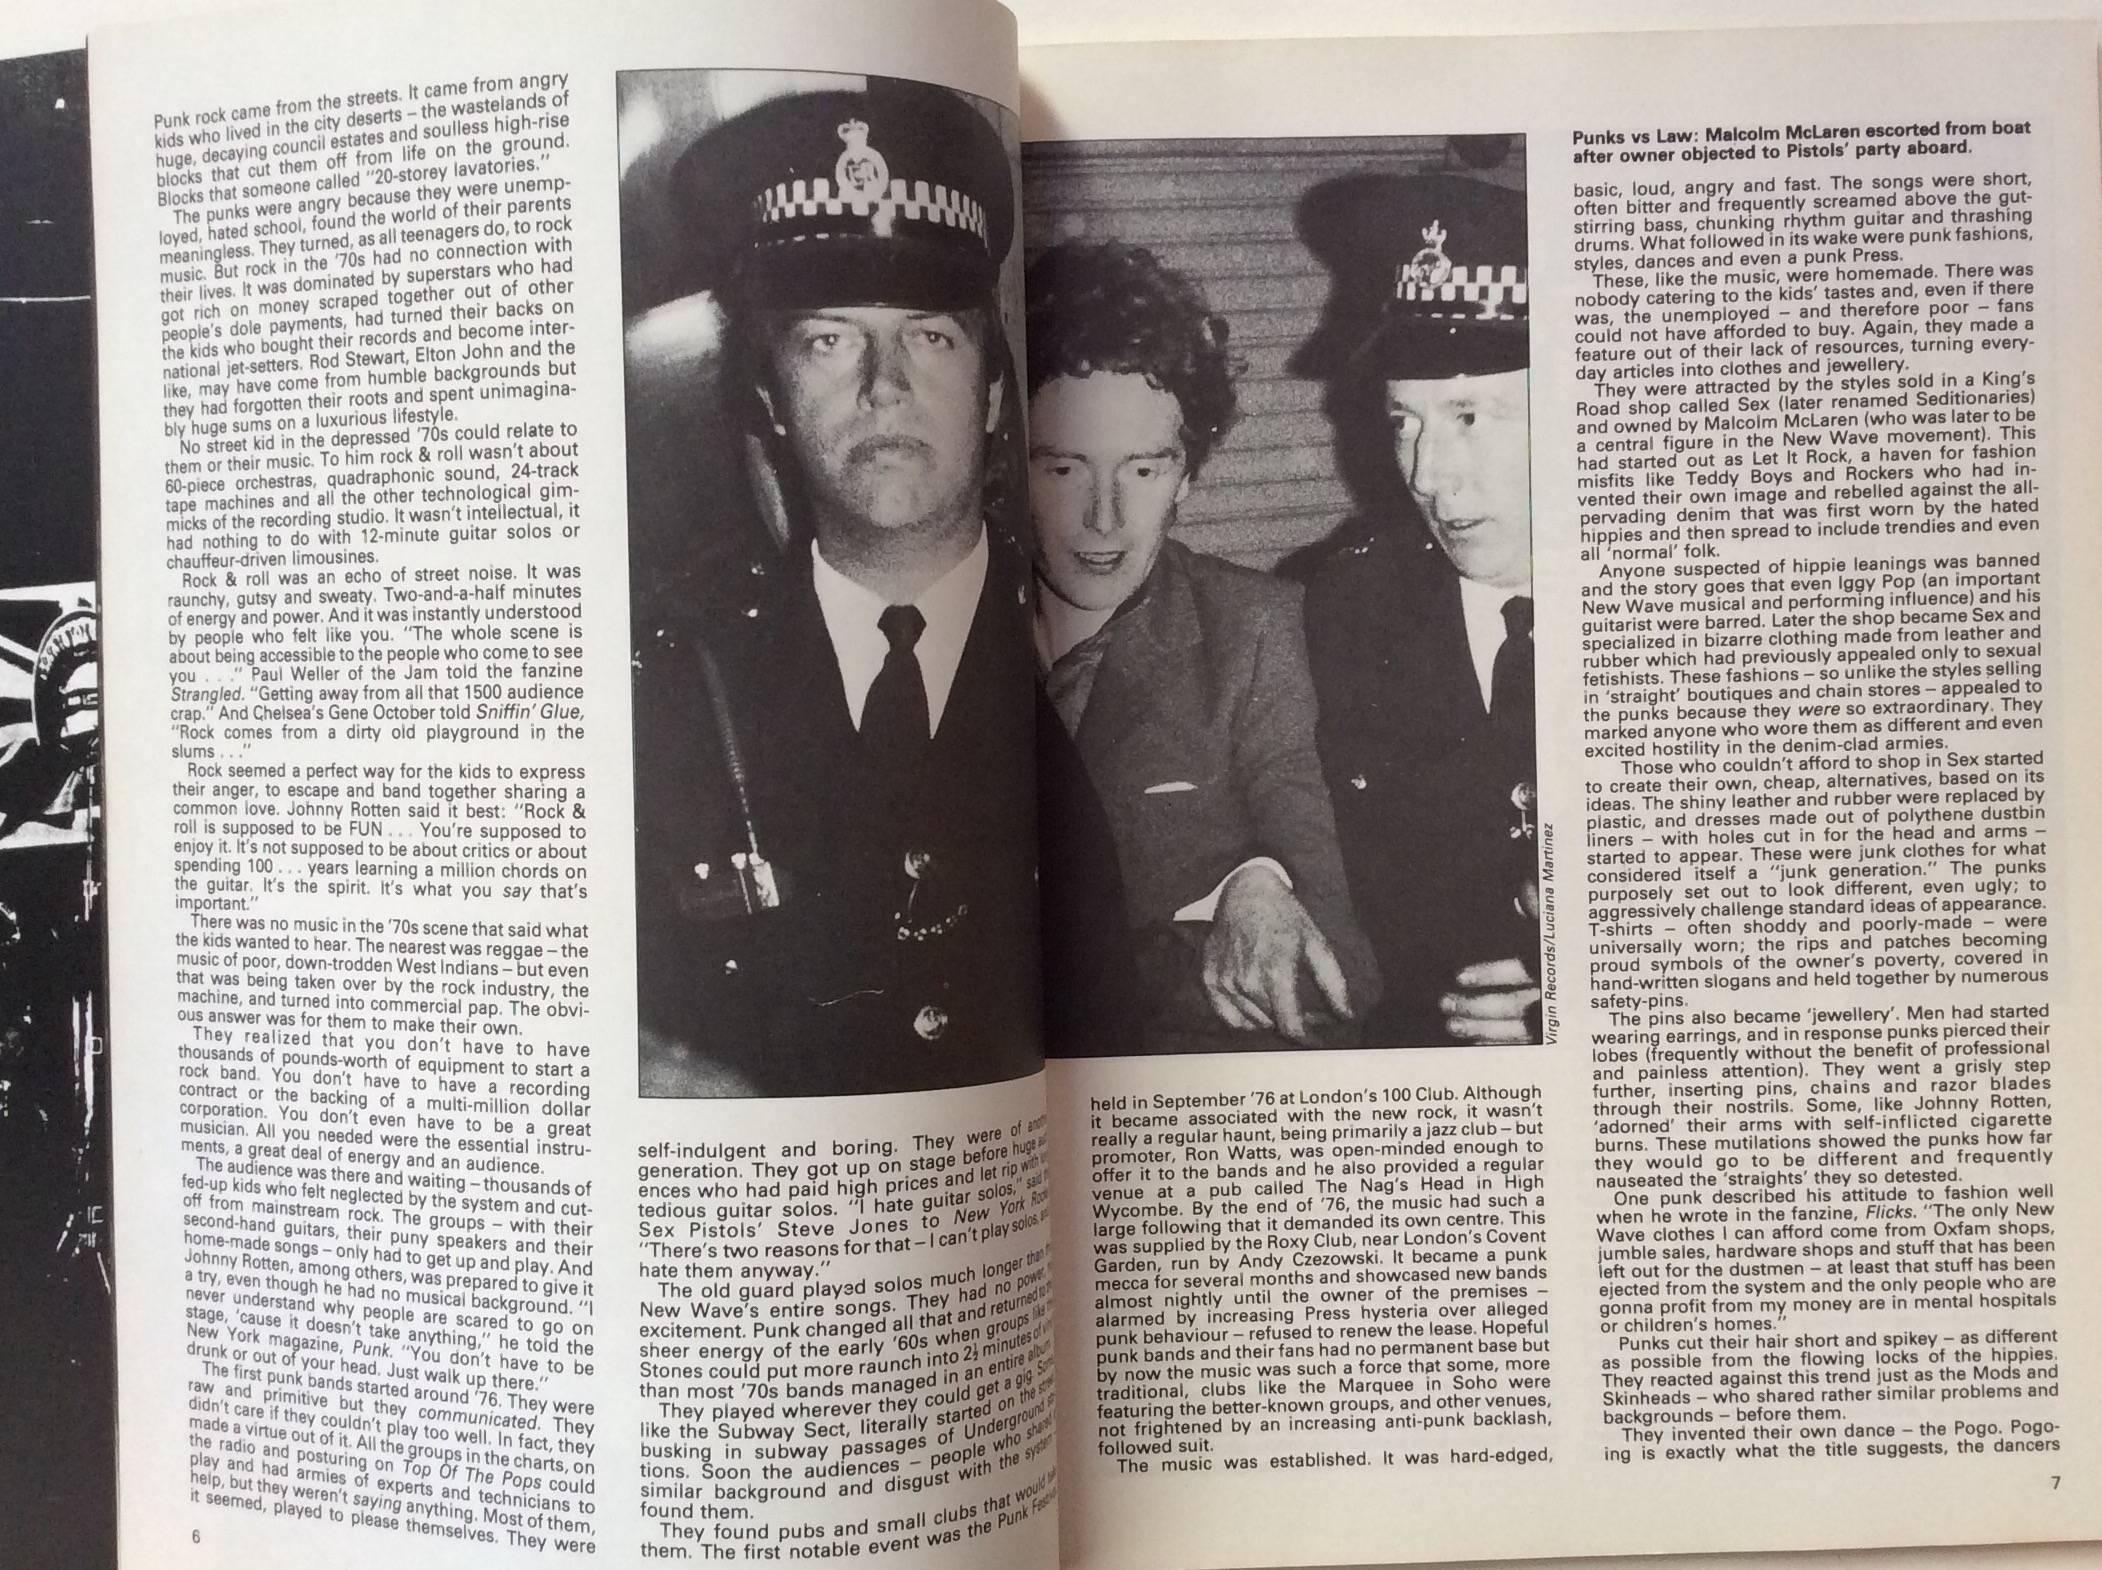 John Tobler 

Punk-Rock

Ein kompletter Leitfaden zur britischen und amerikanischen New Wave

Erste Ausgabe, veröffentlicht von Pheobus Publishing, 1977

Ein kompletter Überblick über Punk- und New-Wave-Künstler von den Adverts über The Clash bis zu